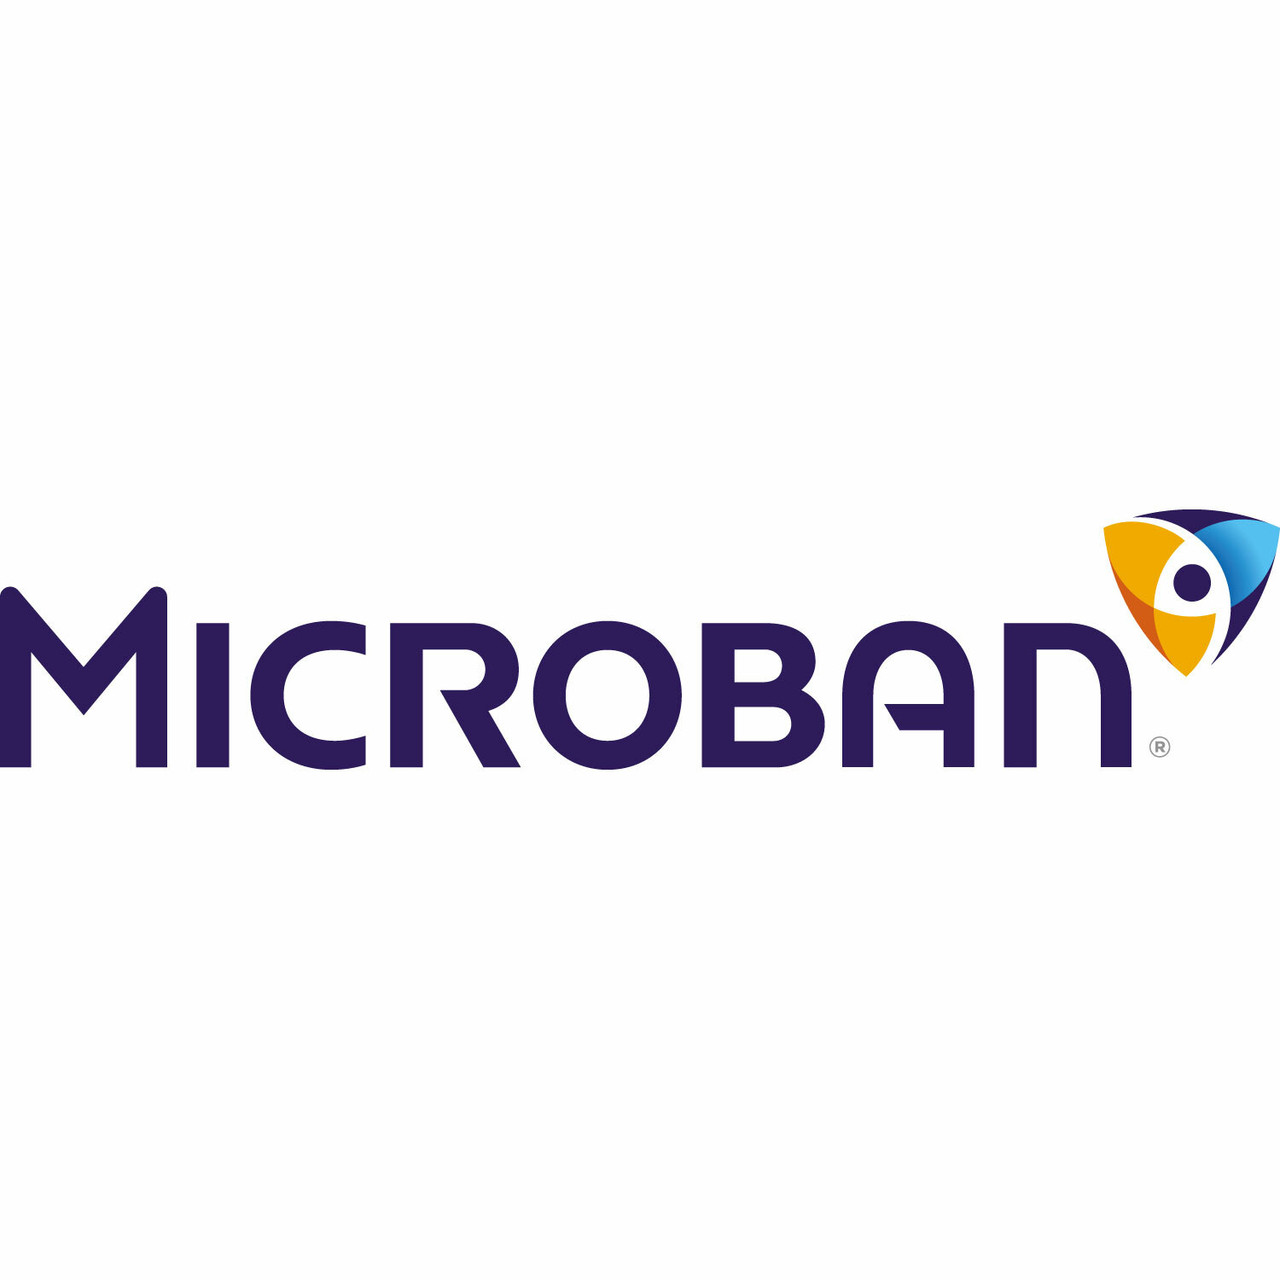 Microban®